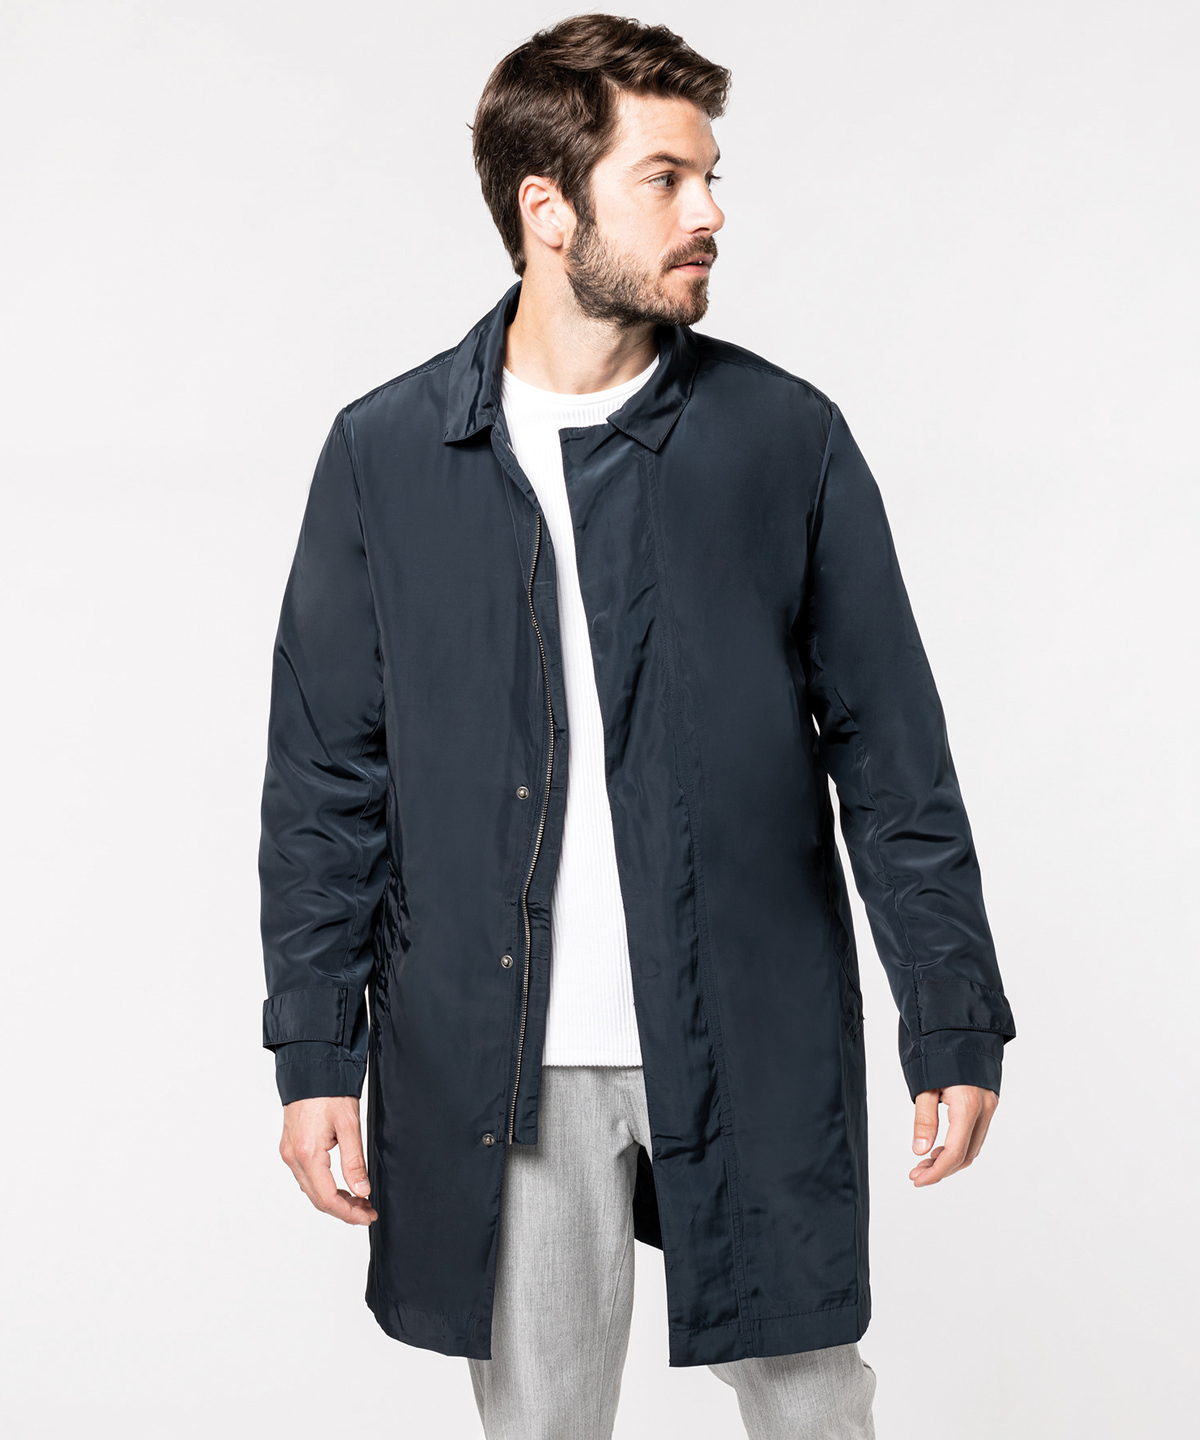 Men's lightweight trench coat